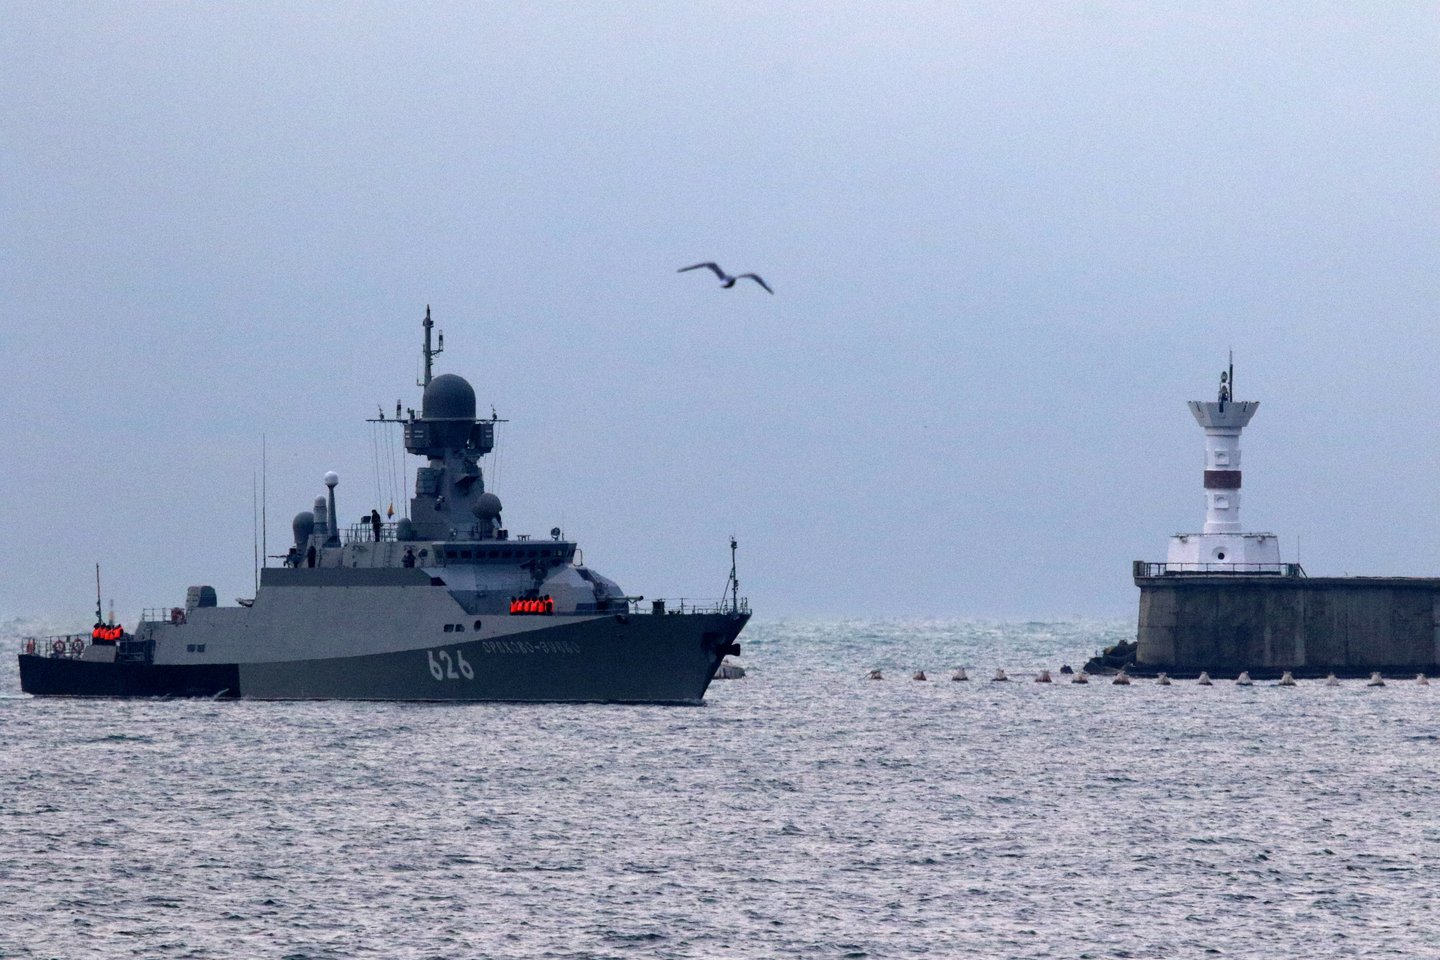  Ukrainos karinio jūrų laivyno vadas šią savaitę Vašingtone susitinka su JAV karinių jūrų pajėgų operacijų vadu, o jų diskusijų metu numatyta aptarti praėjusį mėnesį Kerčės sąsiauryje įvykusį incidentą, ketvirtadienį pranešė amerikiečių pareigūnai.<br> Reuters/Scanpix nuotr.